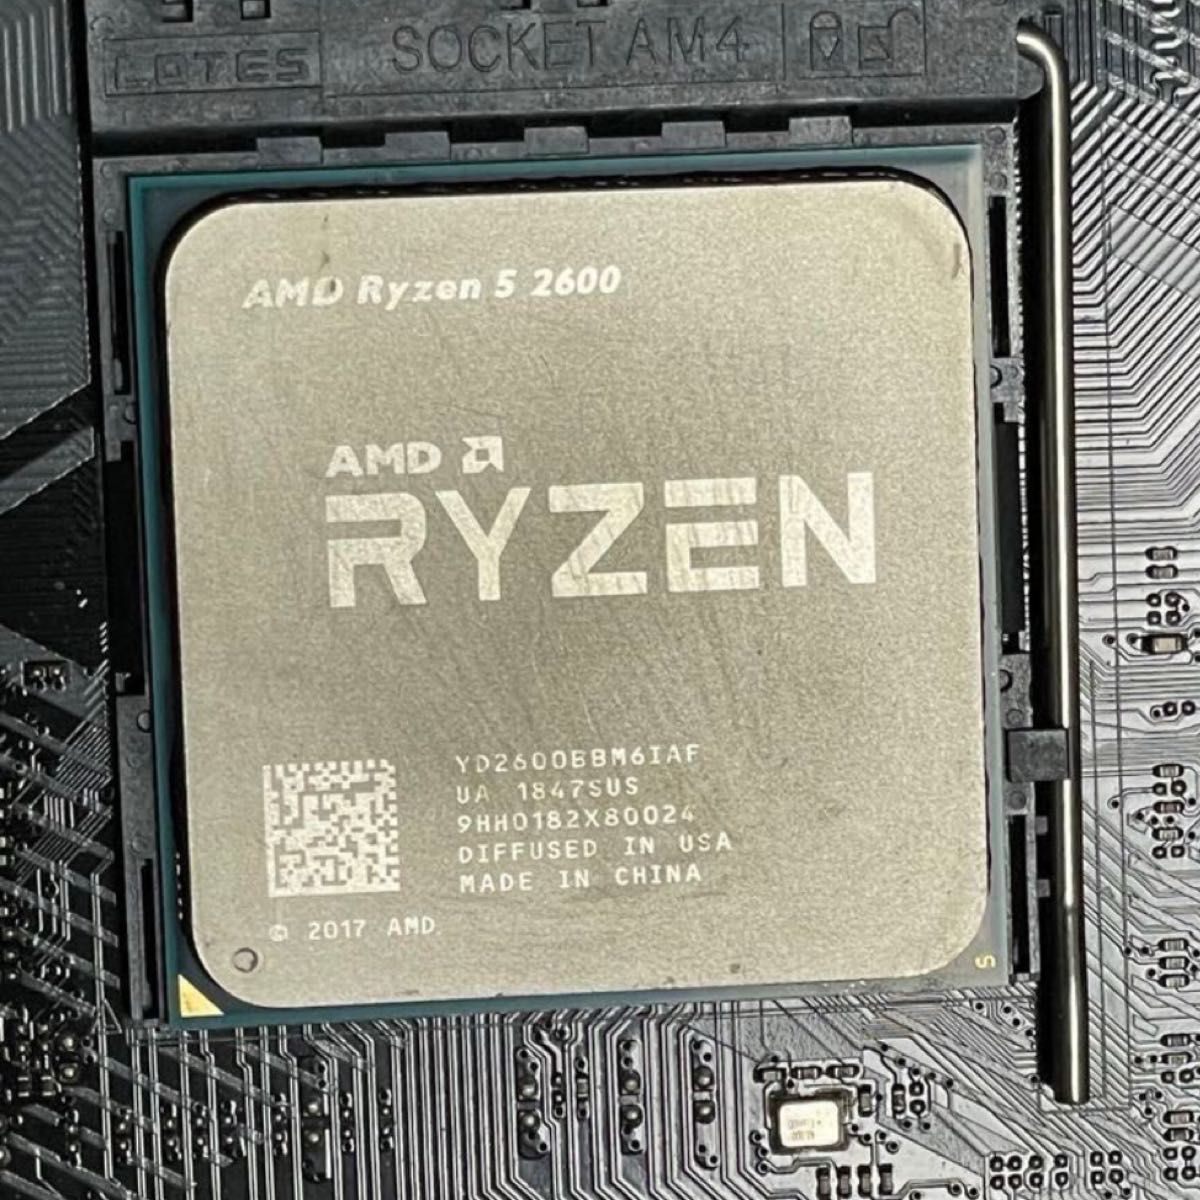 AMD Ryzen 5 2600 cpu am4